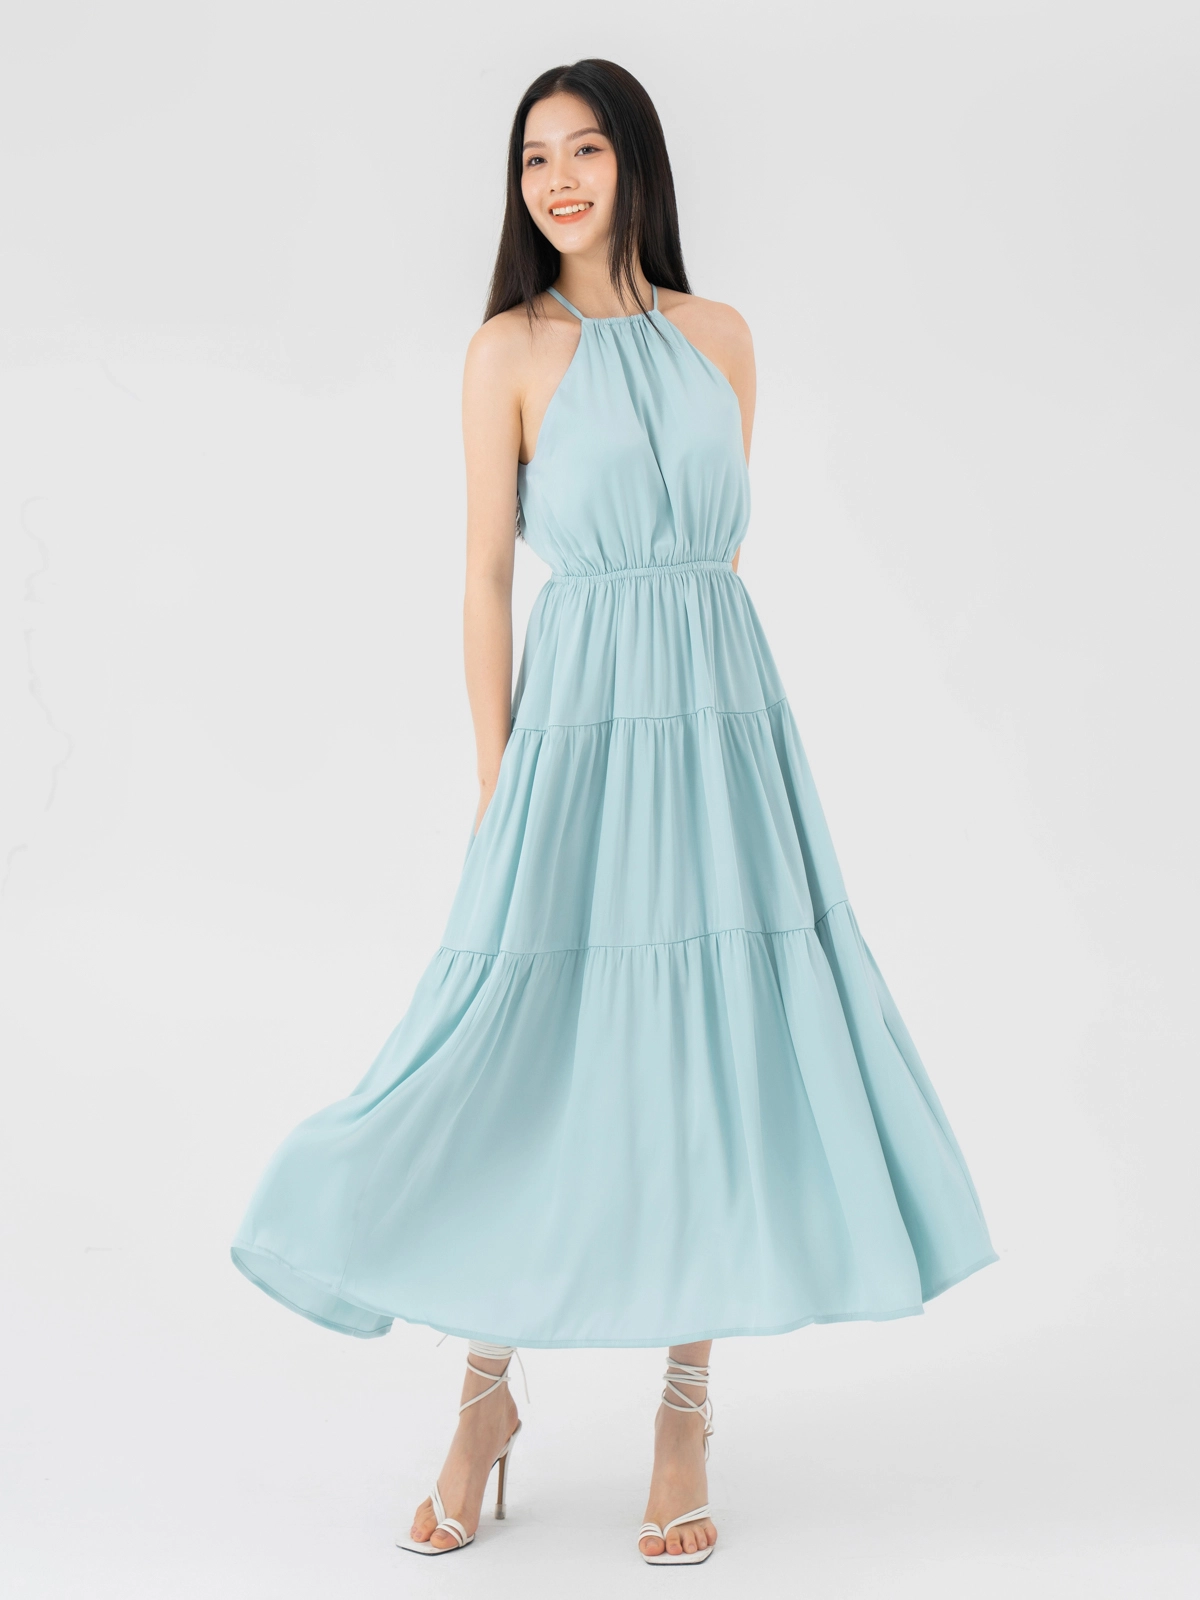 Váy công sở hè 2019 - thể hiện đẳng cấp với những mẫu thiết kế cao cấp -  Thời Trang NEVA - Luôn Đón Đầu Xu Hướng